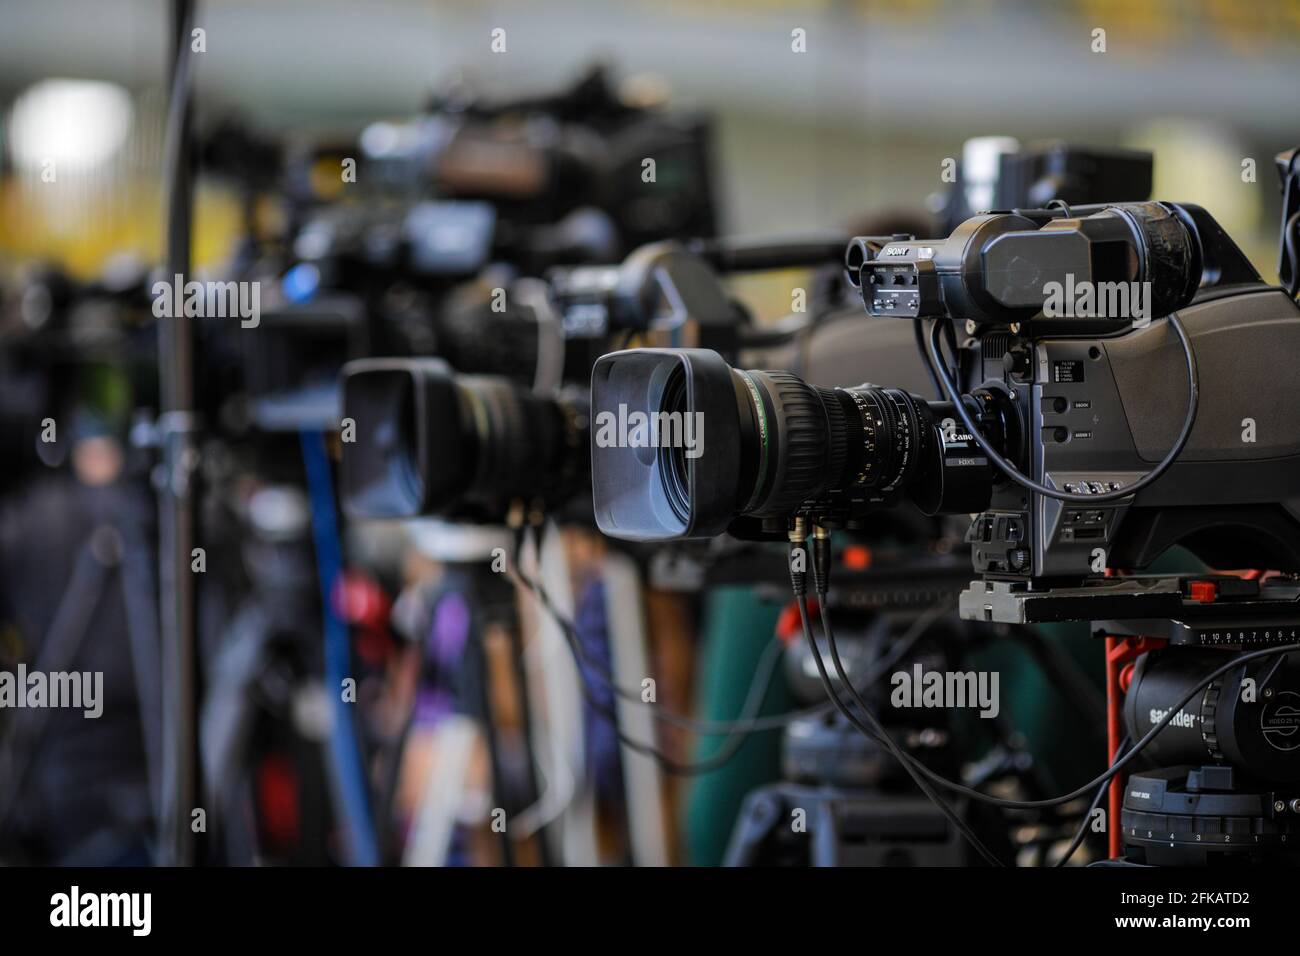 Bukarest, Rumänien - 25. April 2021: Bild mit geringer Schärfentiefe (selektiver Fokus) mit TV-Kameras auf Stativen bei einer Presseveranstaltung. Stockfoto